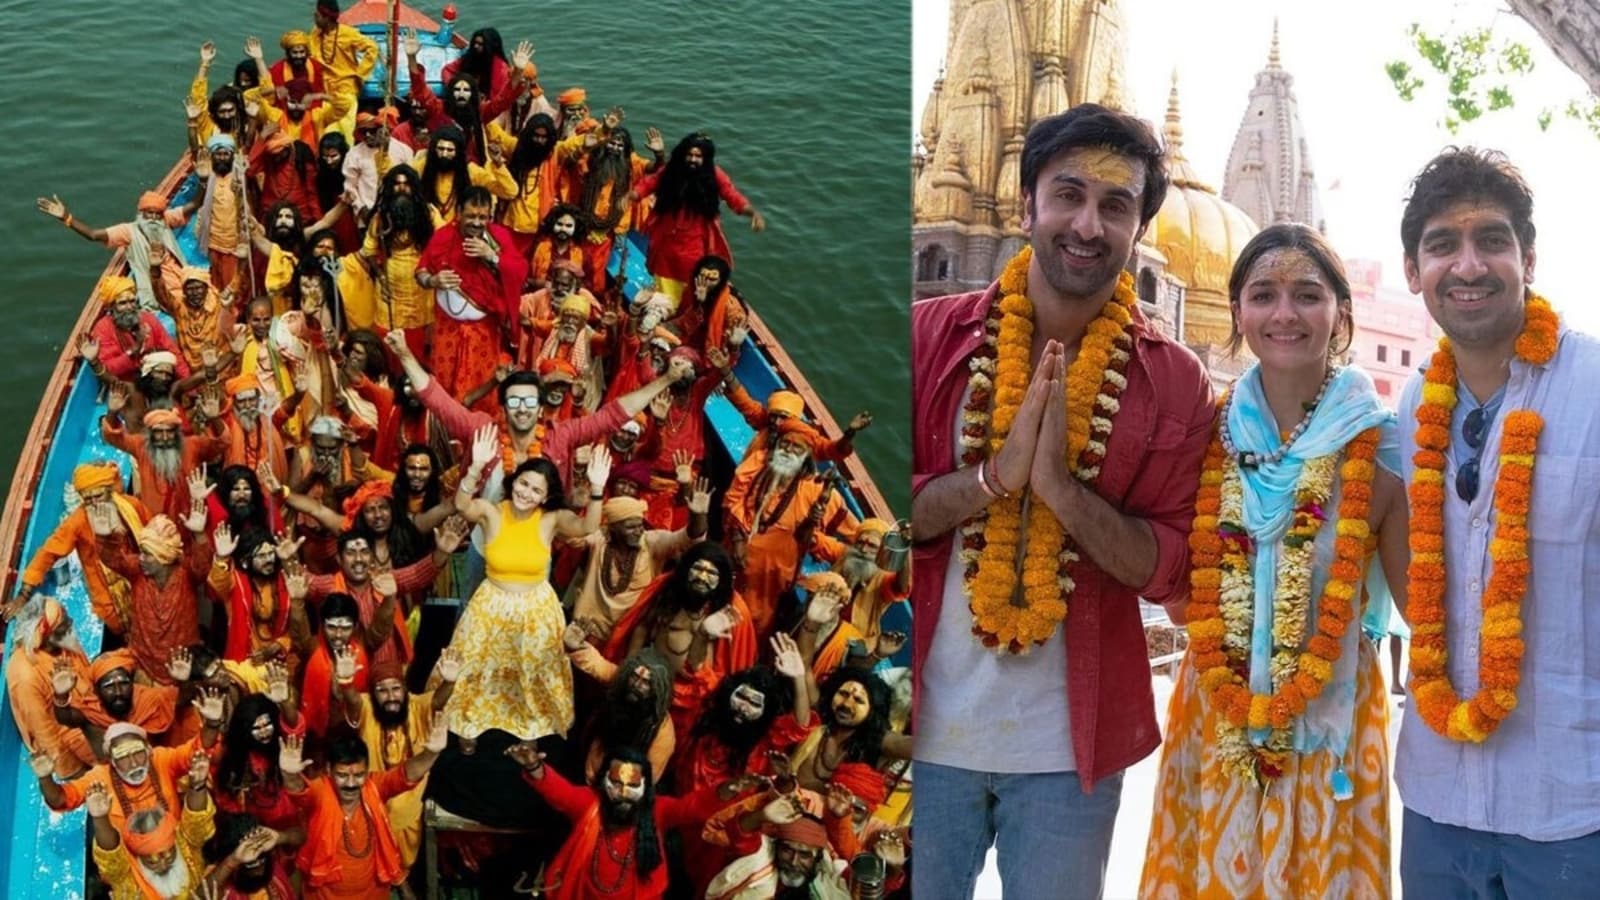 Alia Bhatt, Ranbir Kapoor finally complete Brahmastra shoot, visit Kashi Vishwanath temple post film wrap. See pics